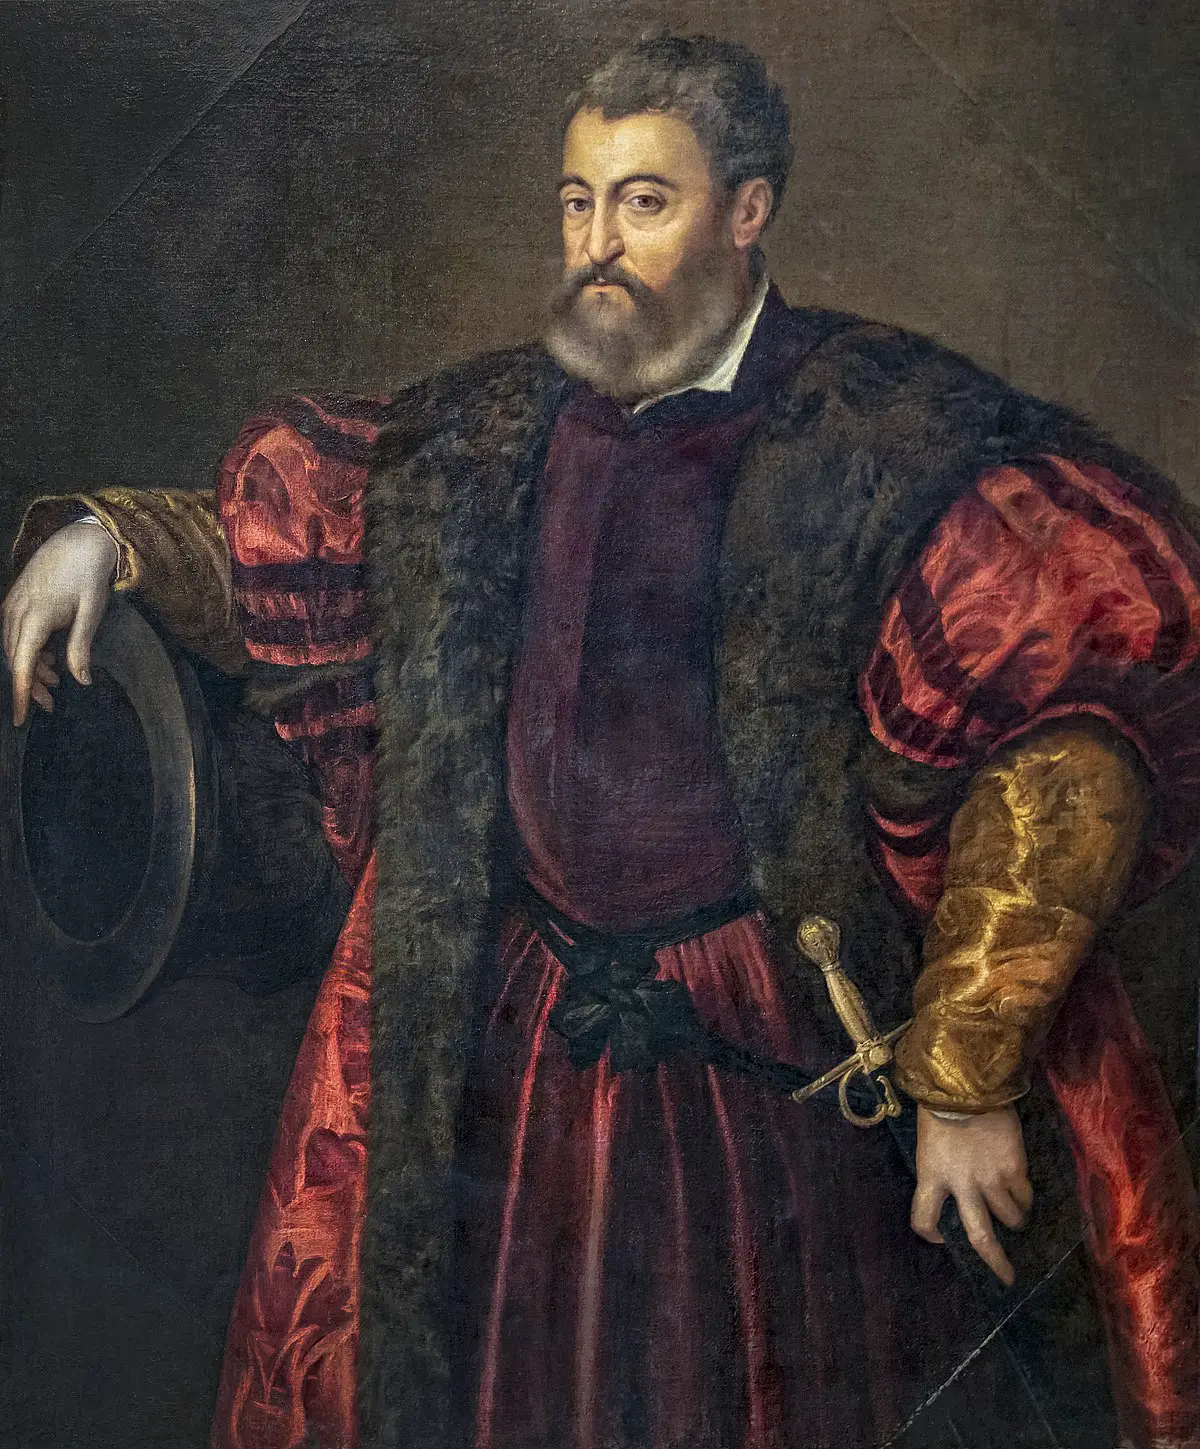 Afonso I